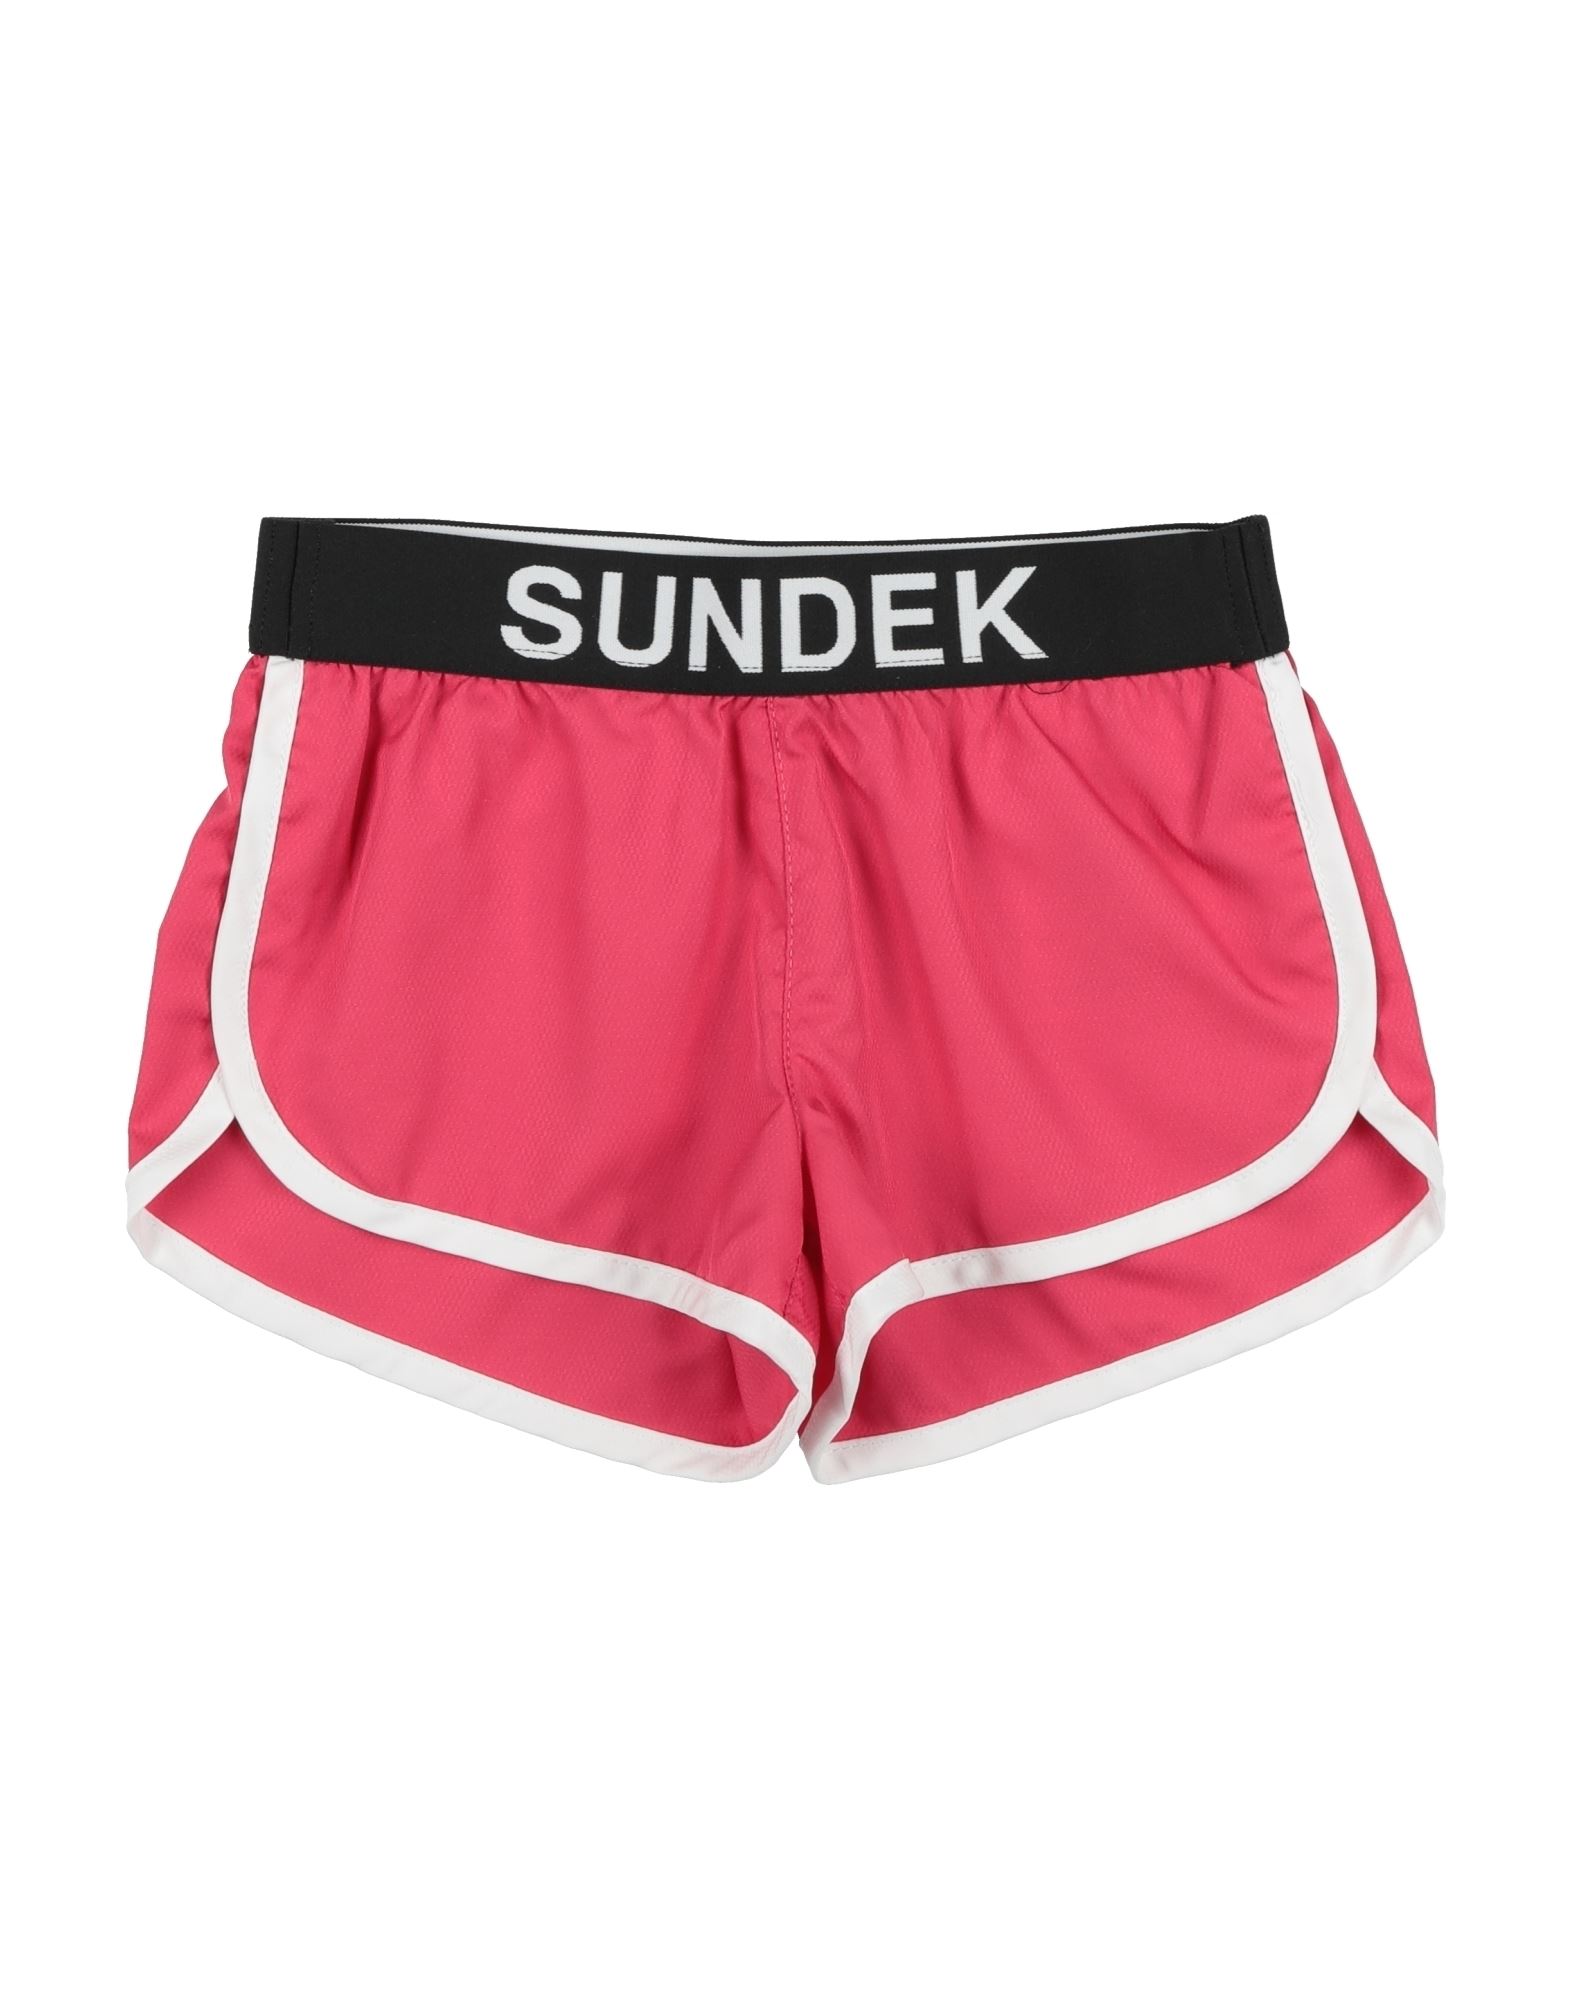 Sundek Kids' Cover-up In Pink